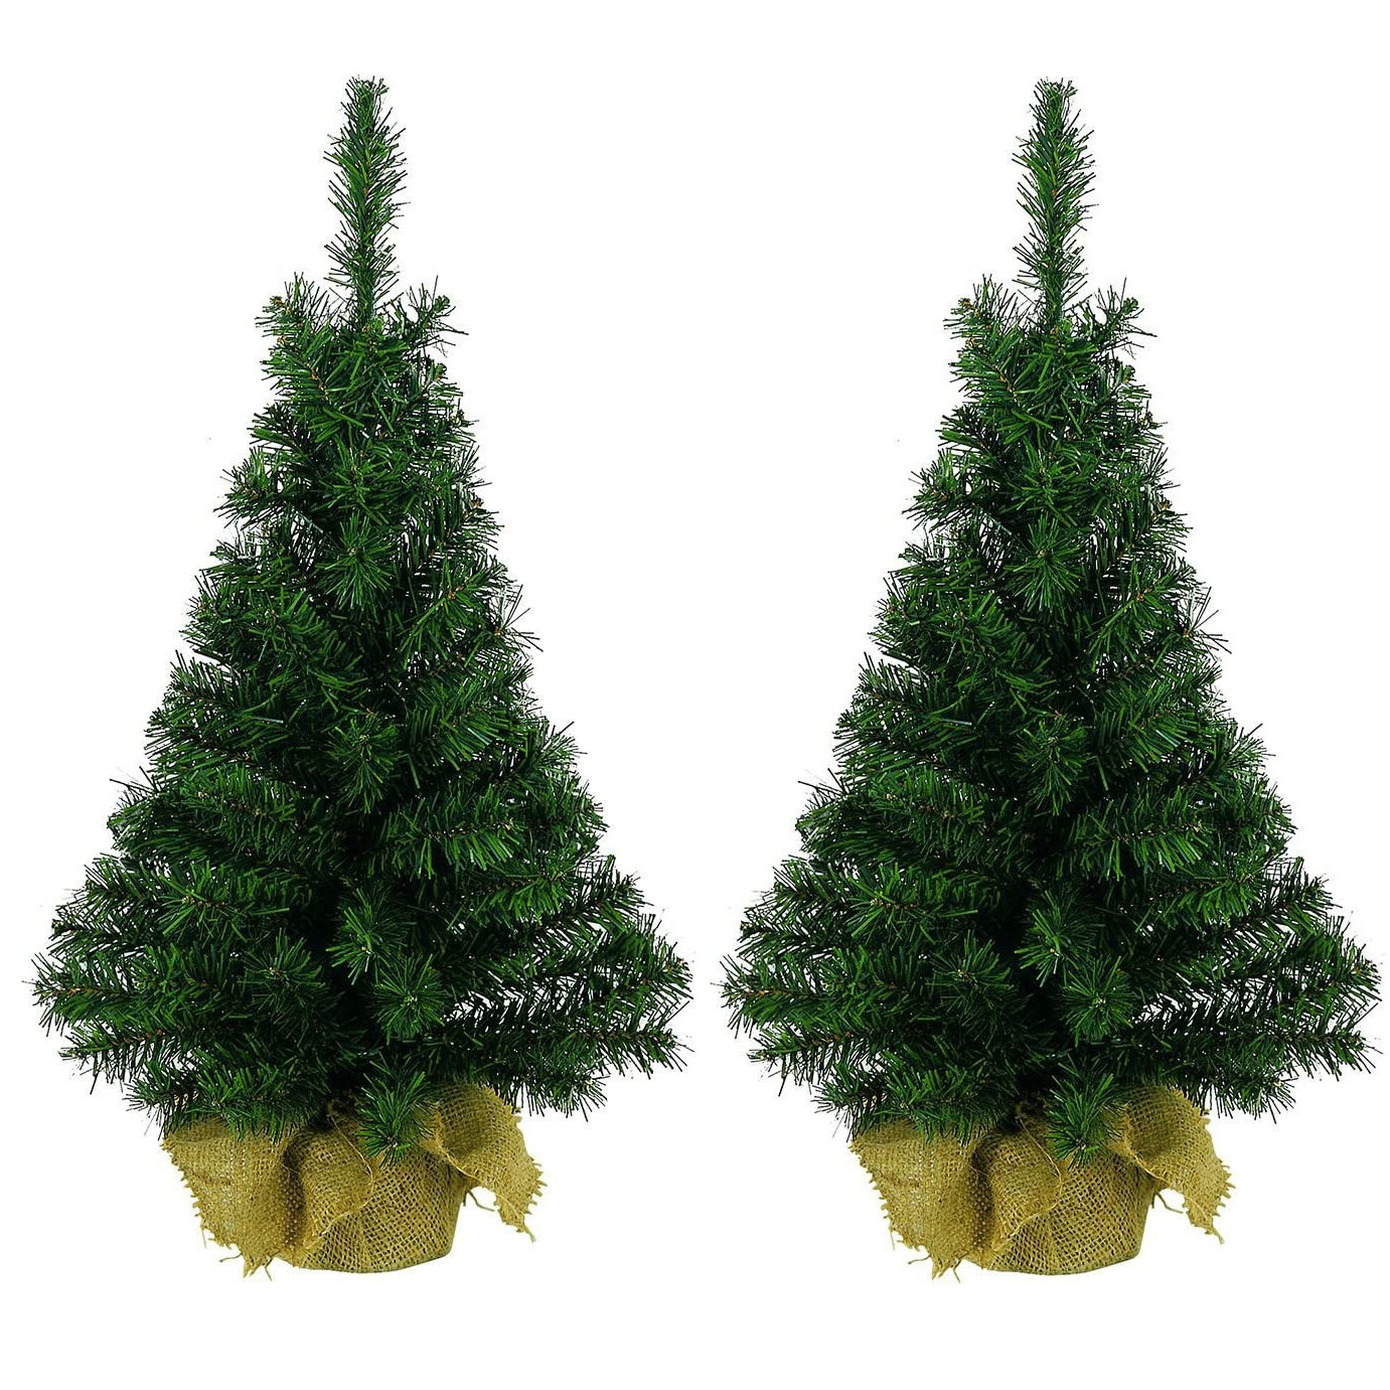 4x stuks kerst kunstbomen groen in jute zak 45 cm